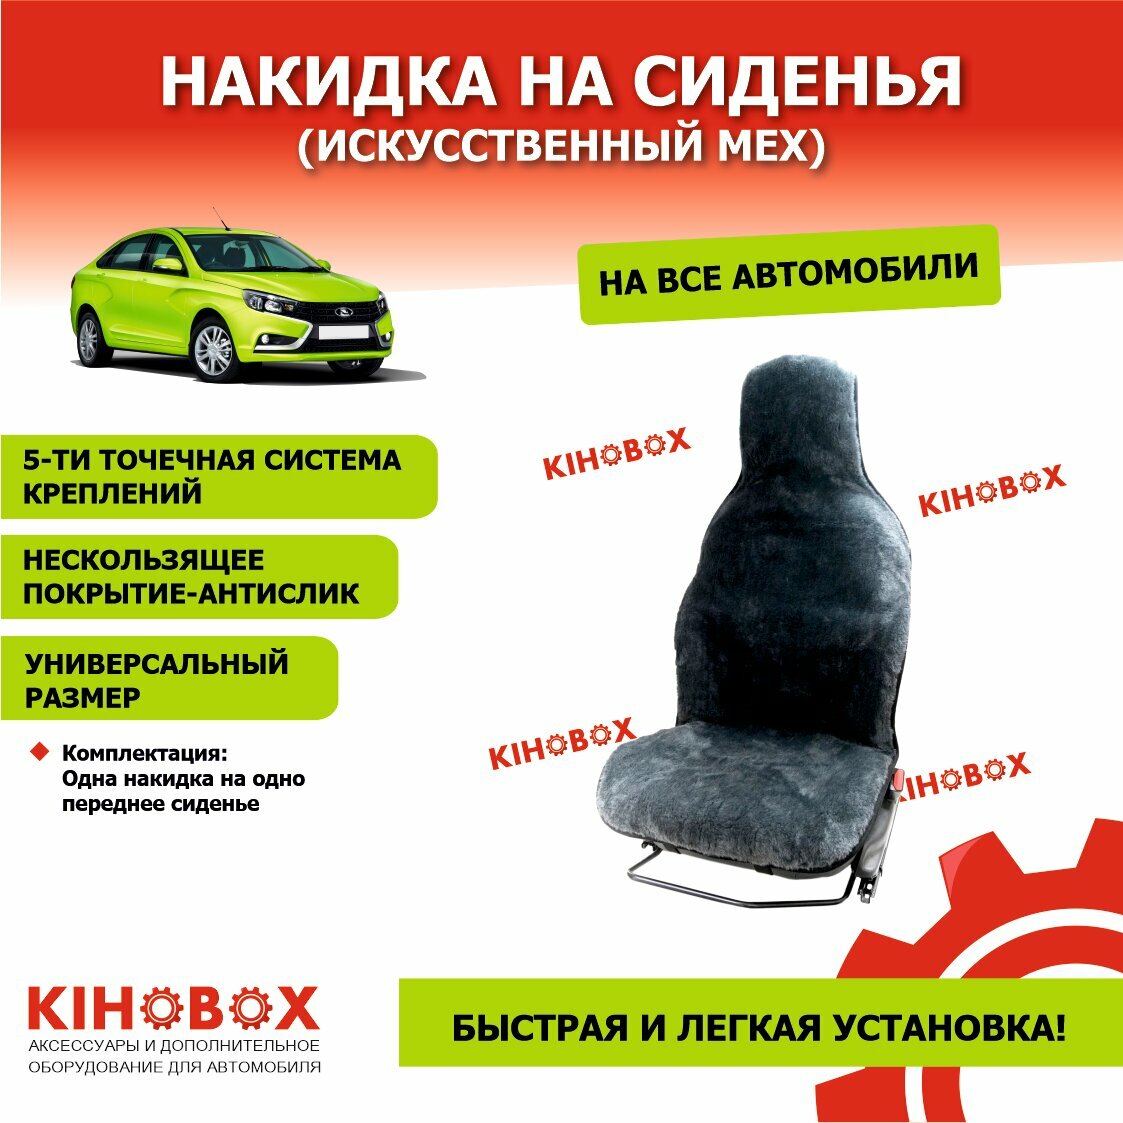 Накидка на сиденье из искусственного меха цвет серый (Высота ворса 07 - 10 см) -1 шт KIHOBOX АРТ 240115